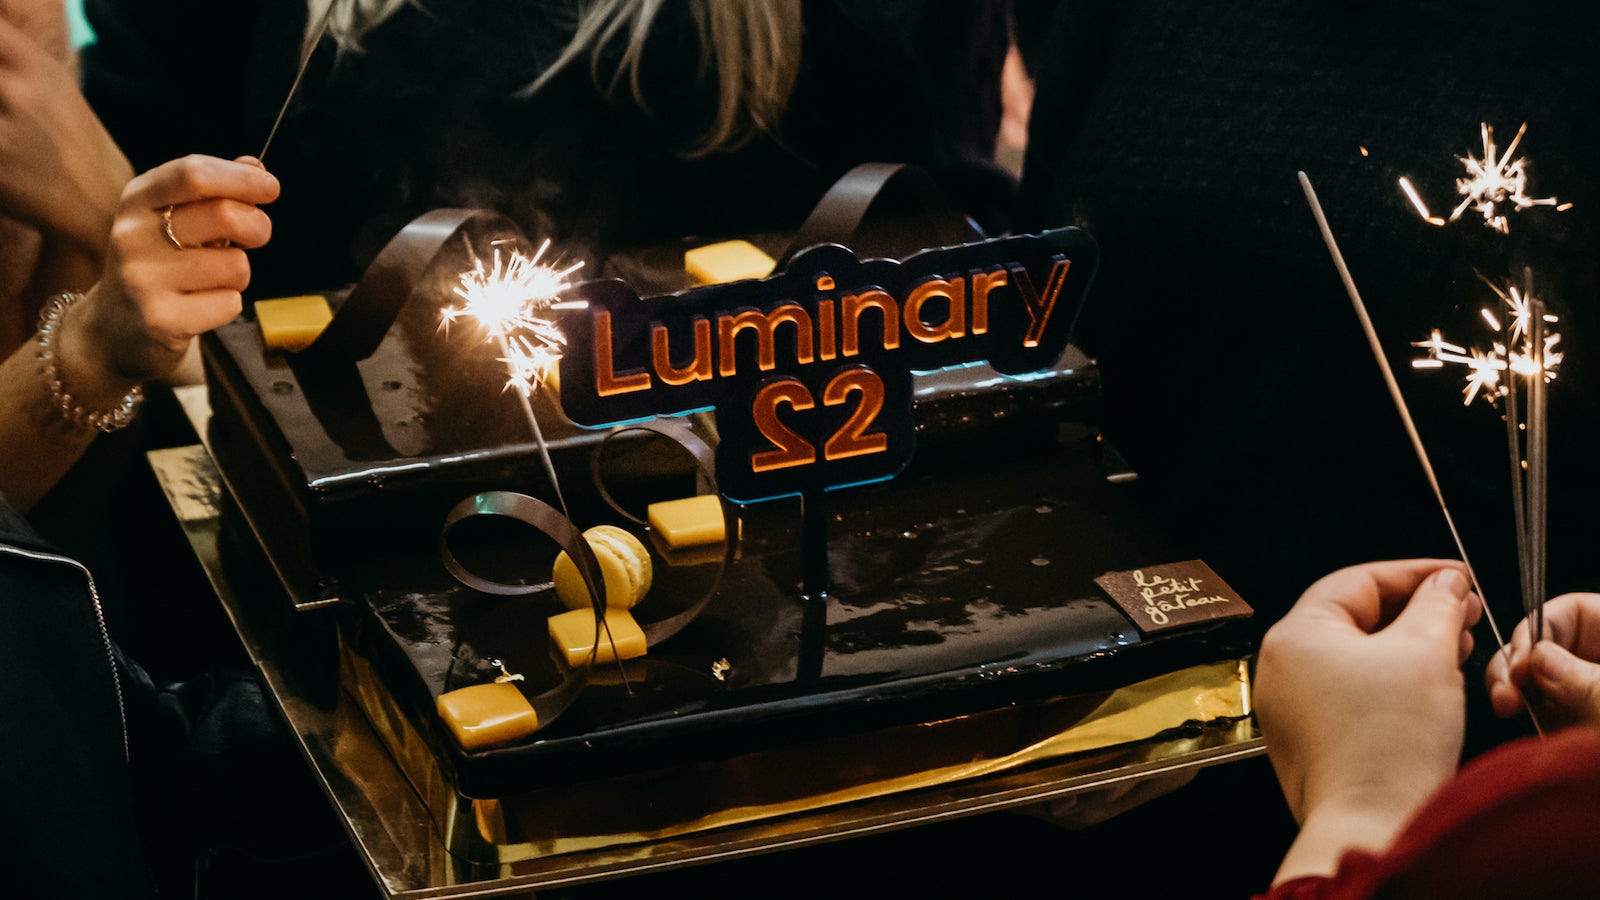 Luminary's 22nd birthday cake